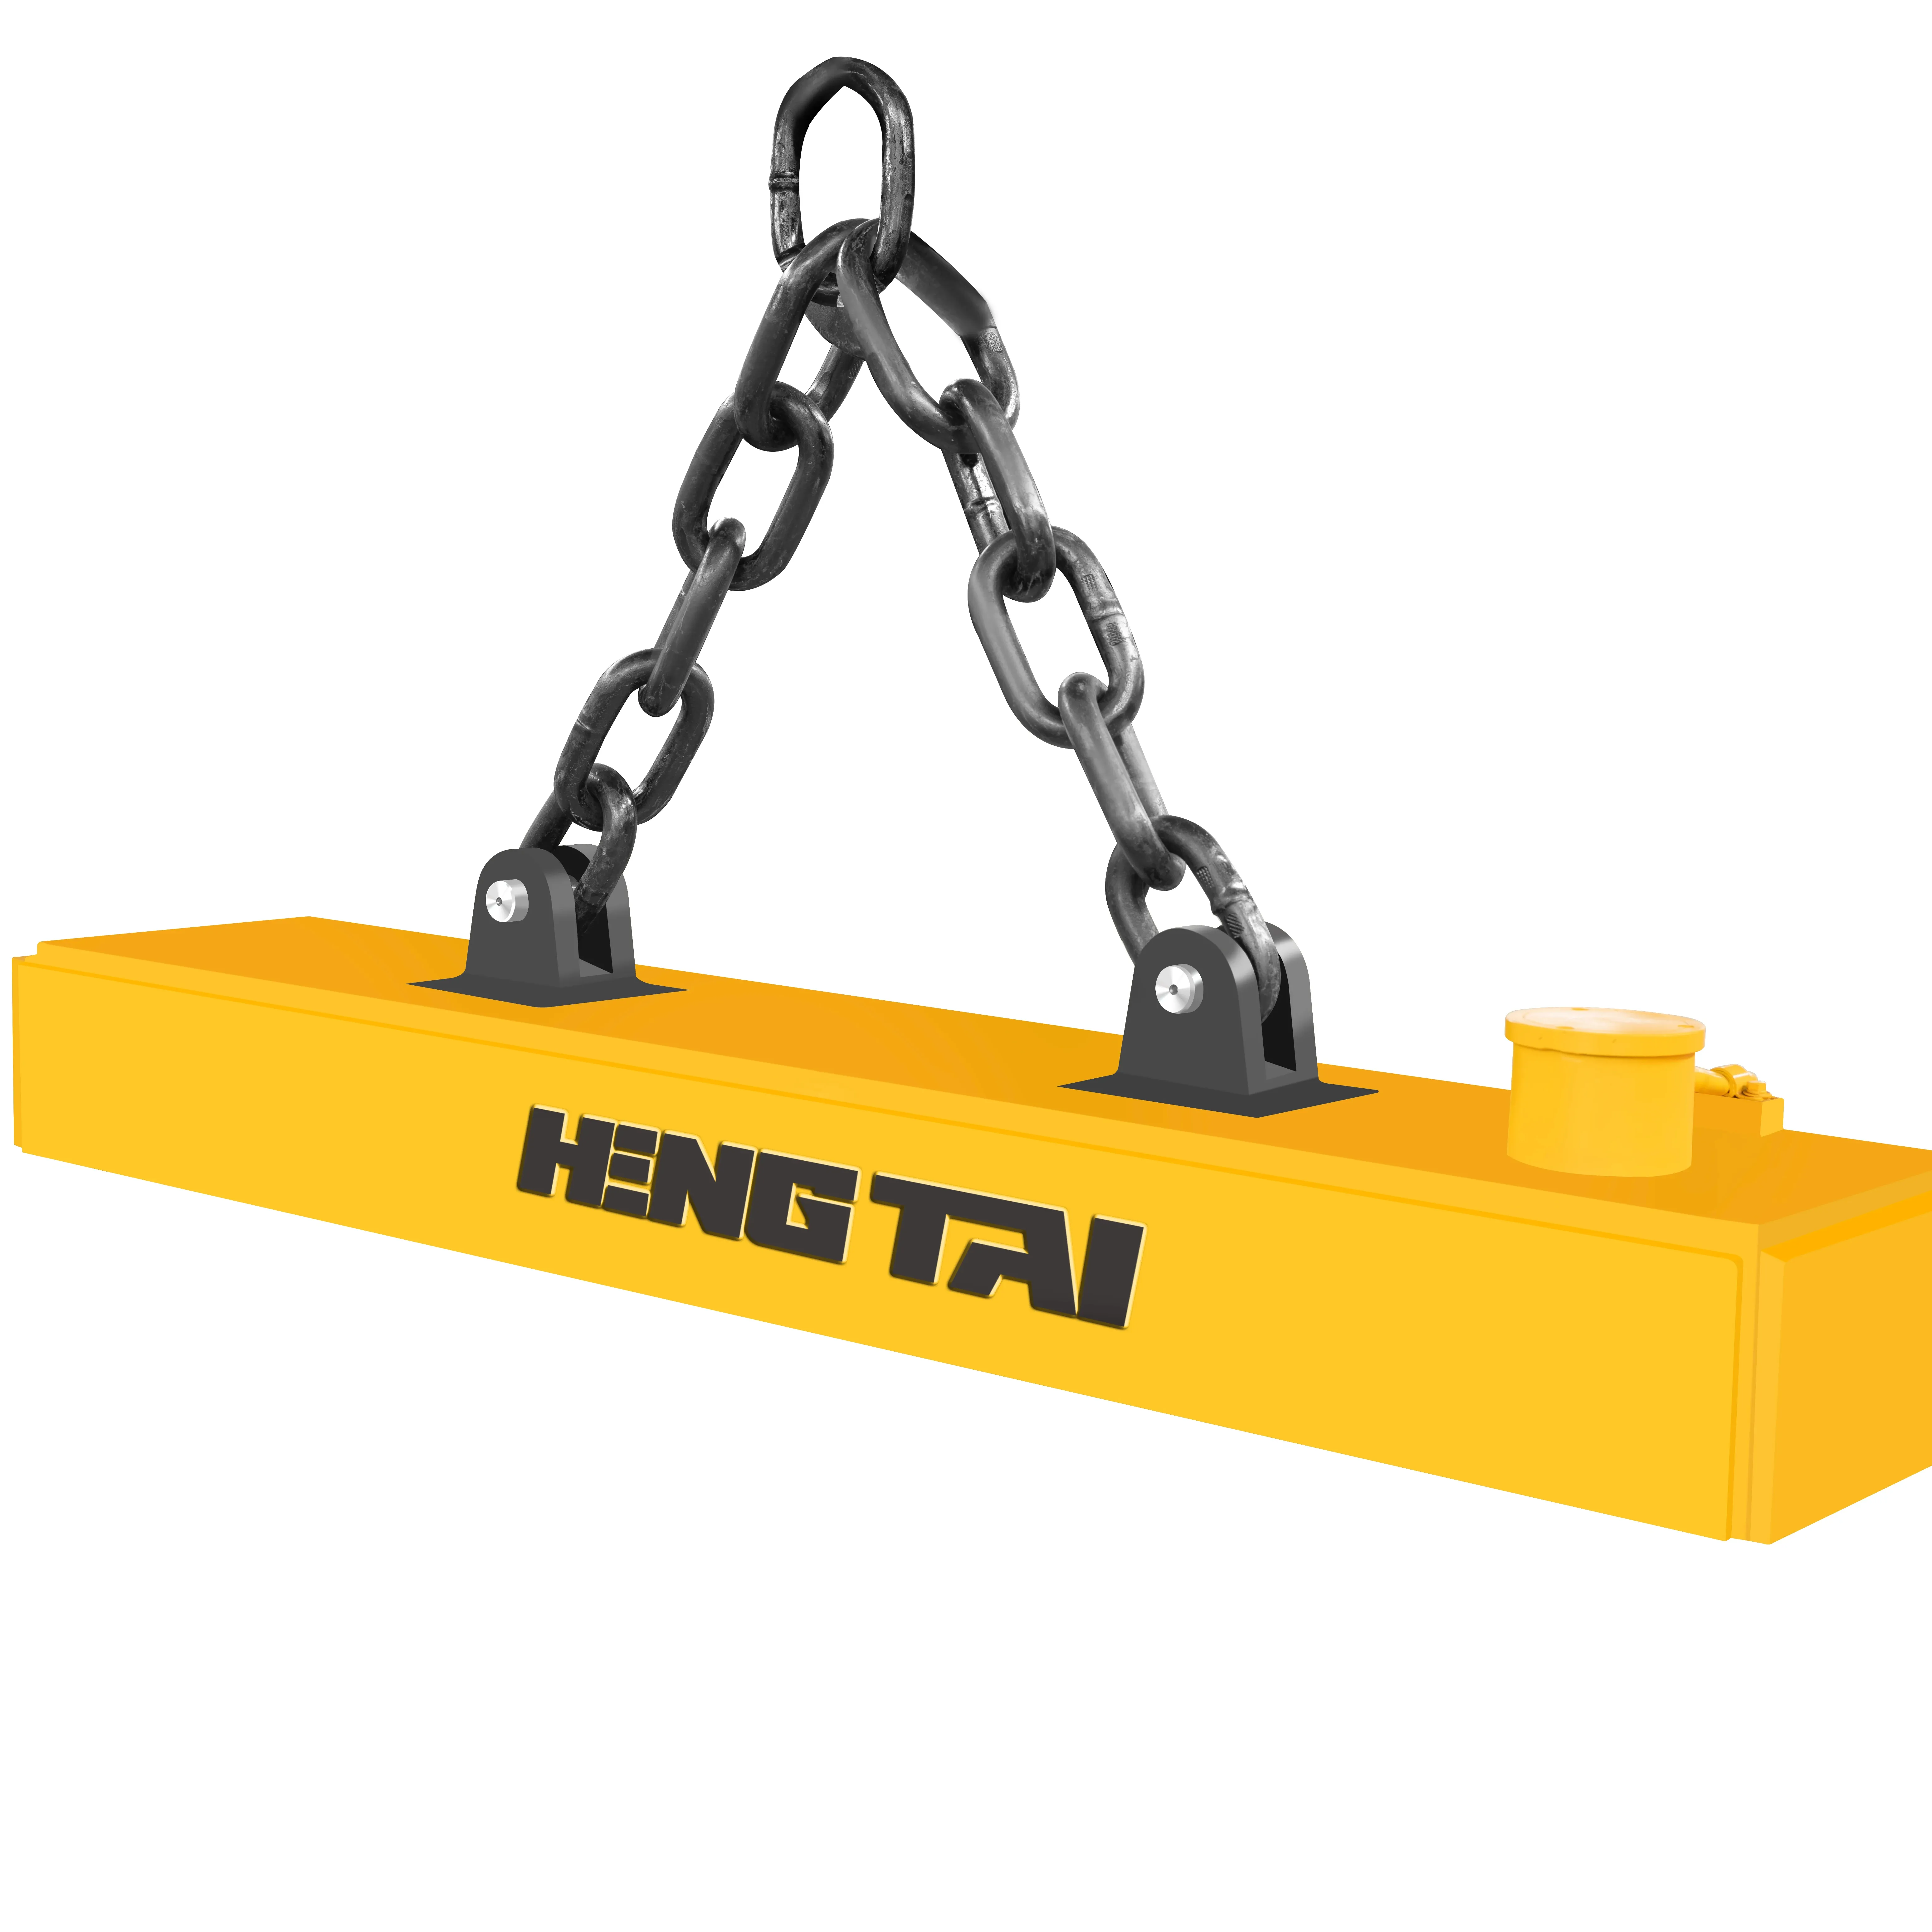 HENGTAI産業用電磁磁石鋼棒を持ち上げるためのクレーン掘削機用の小型で強力な磁石産業用電磁磁石